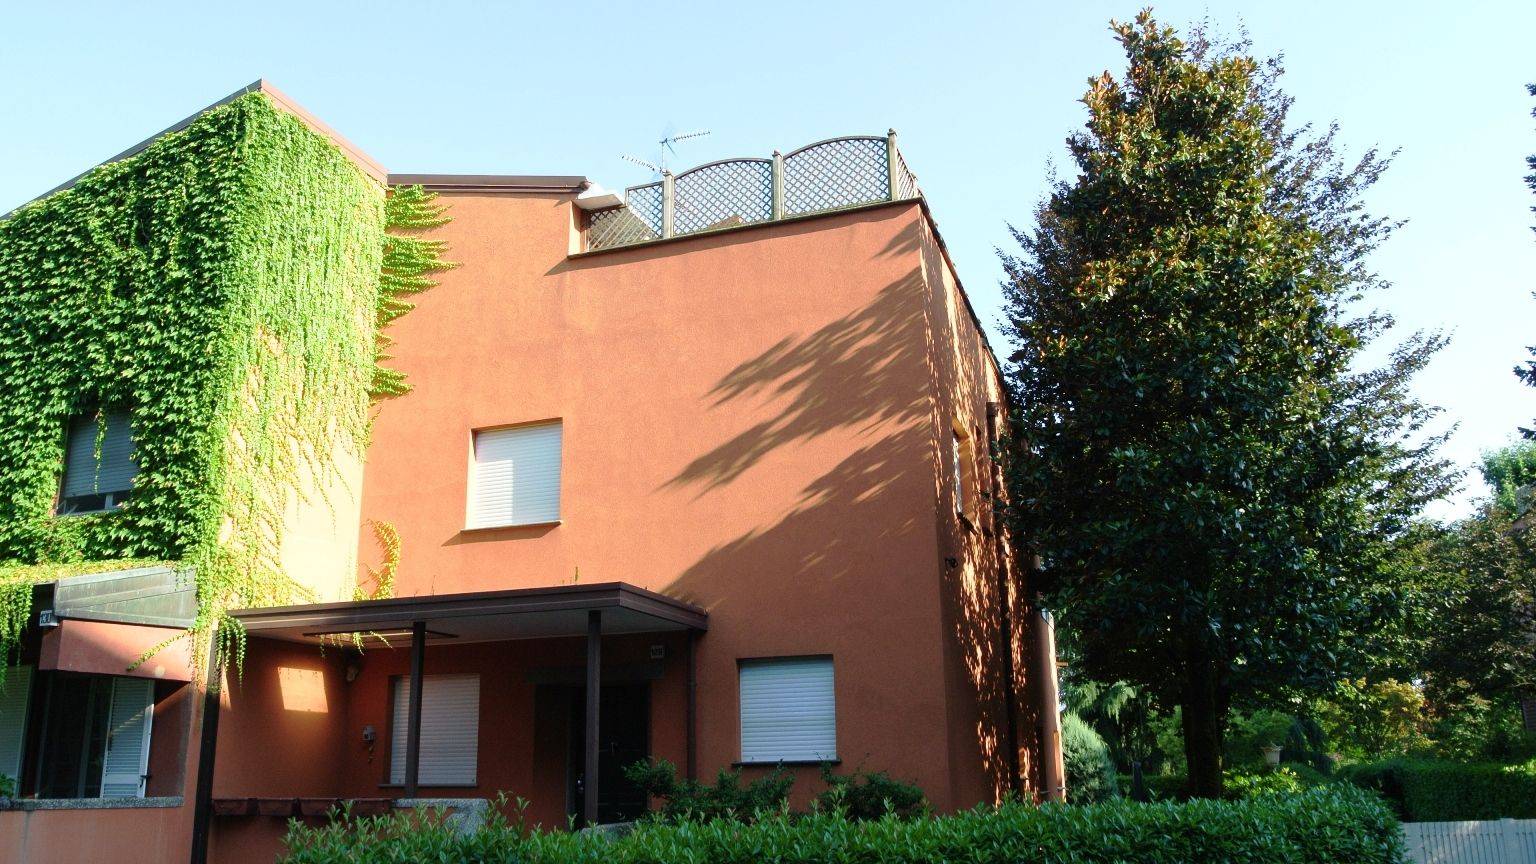 San Felice Settima Strada si vende villa in ottime condizioni a affittata fino ad ottobre 2026, su 4 livelli composta da: soggiorno doppio con camino,